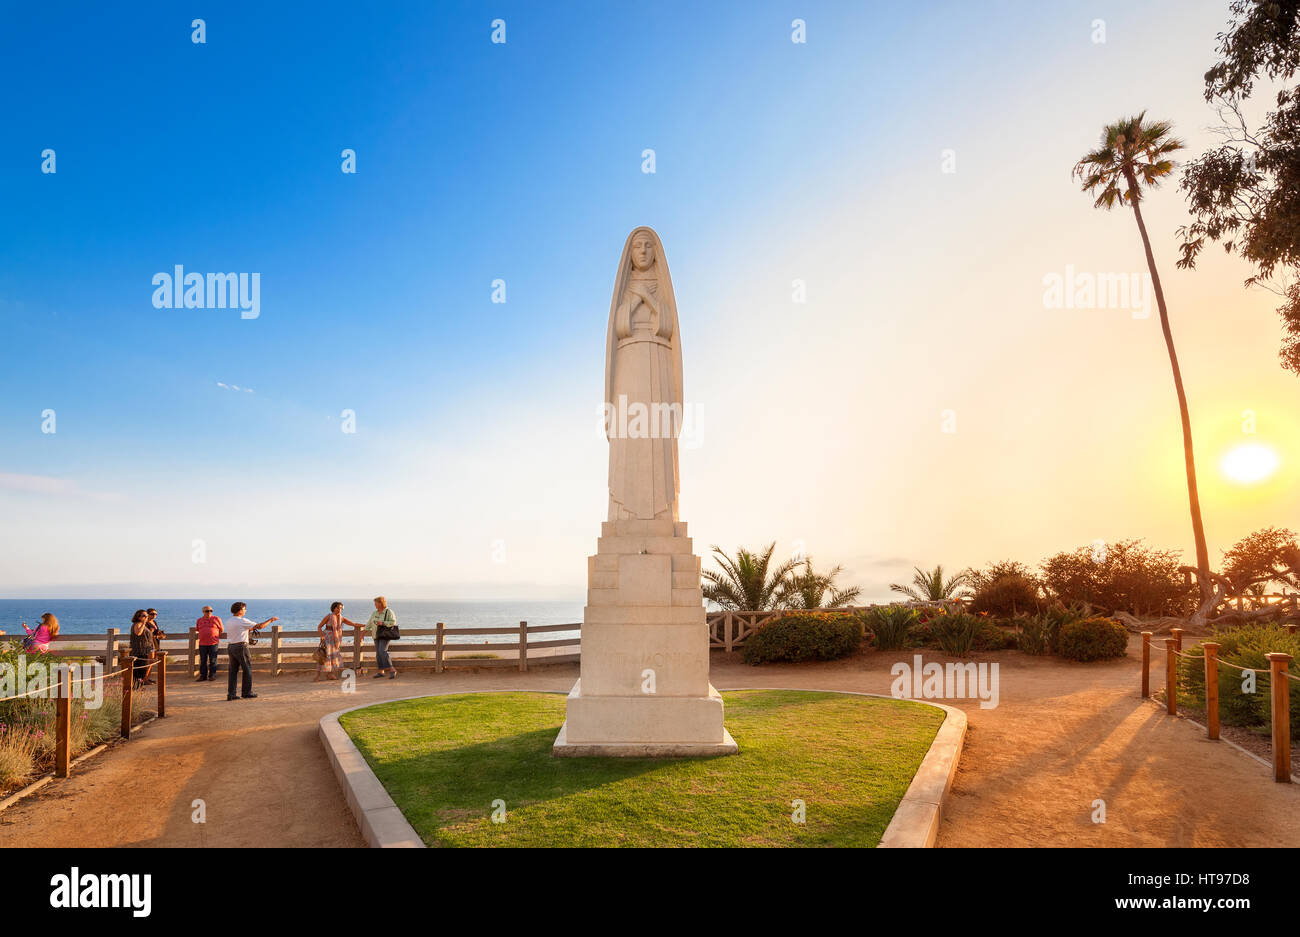 Santa Monica, Kalifornien. Statue von Santa Monica an der Ocean Avenue entlang dem Strand. Bei Sonnenuntergang mit Touristen fotografieren. Stockfoto